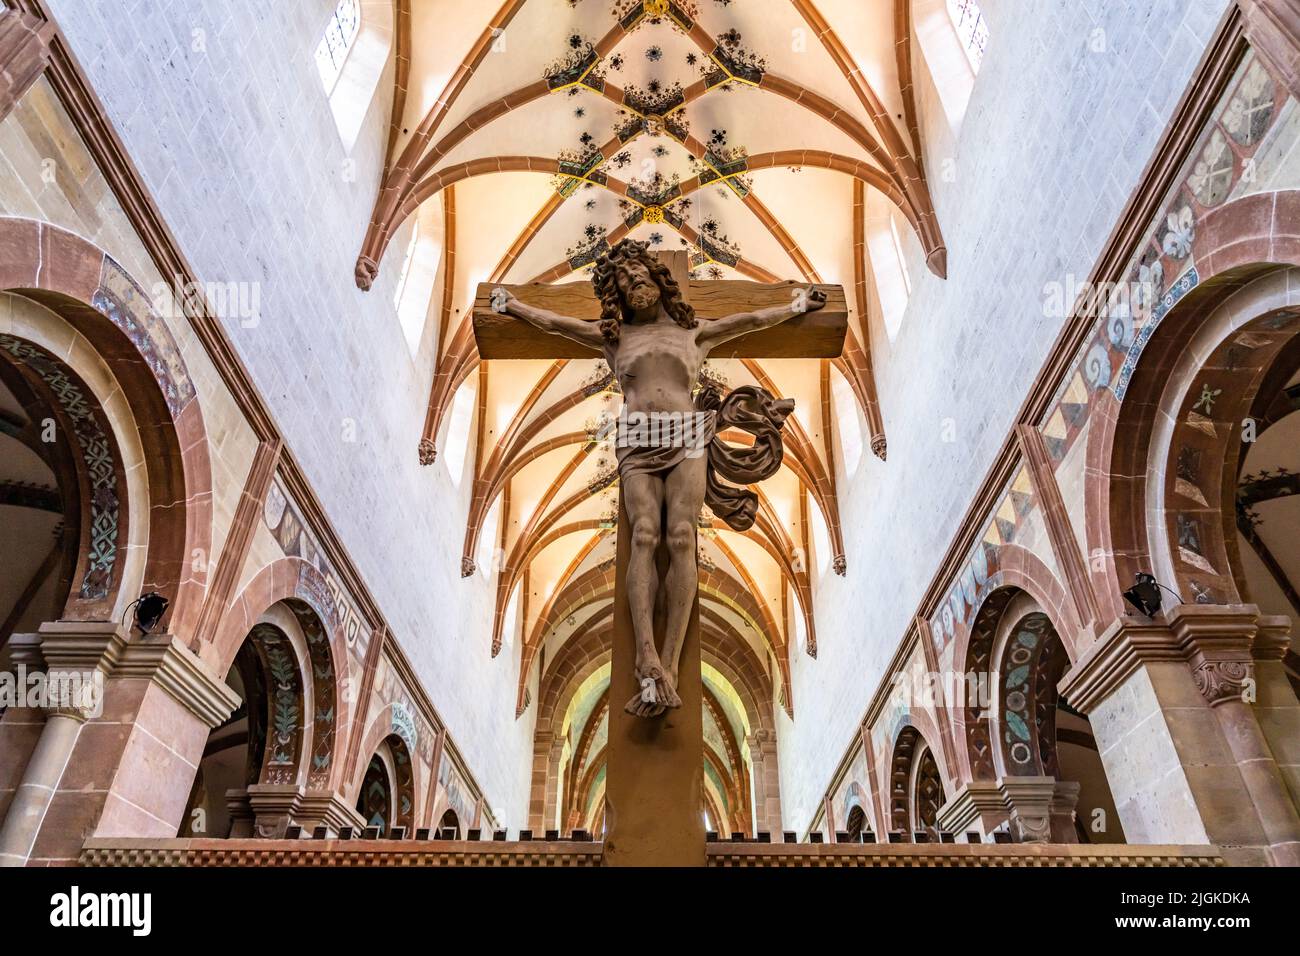 Kruzifix im Innenraum der Klosterkirche, Kloster Maulbronn, Maulbronn, Baden-Württemberg, Deutschland |  Maulbronn Monastery Abbey church crucifix, Ma Stock Photo